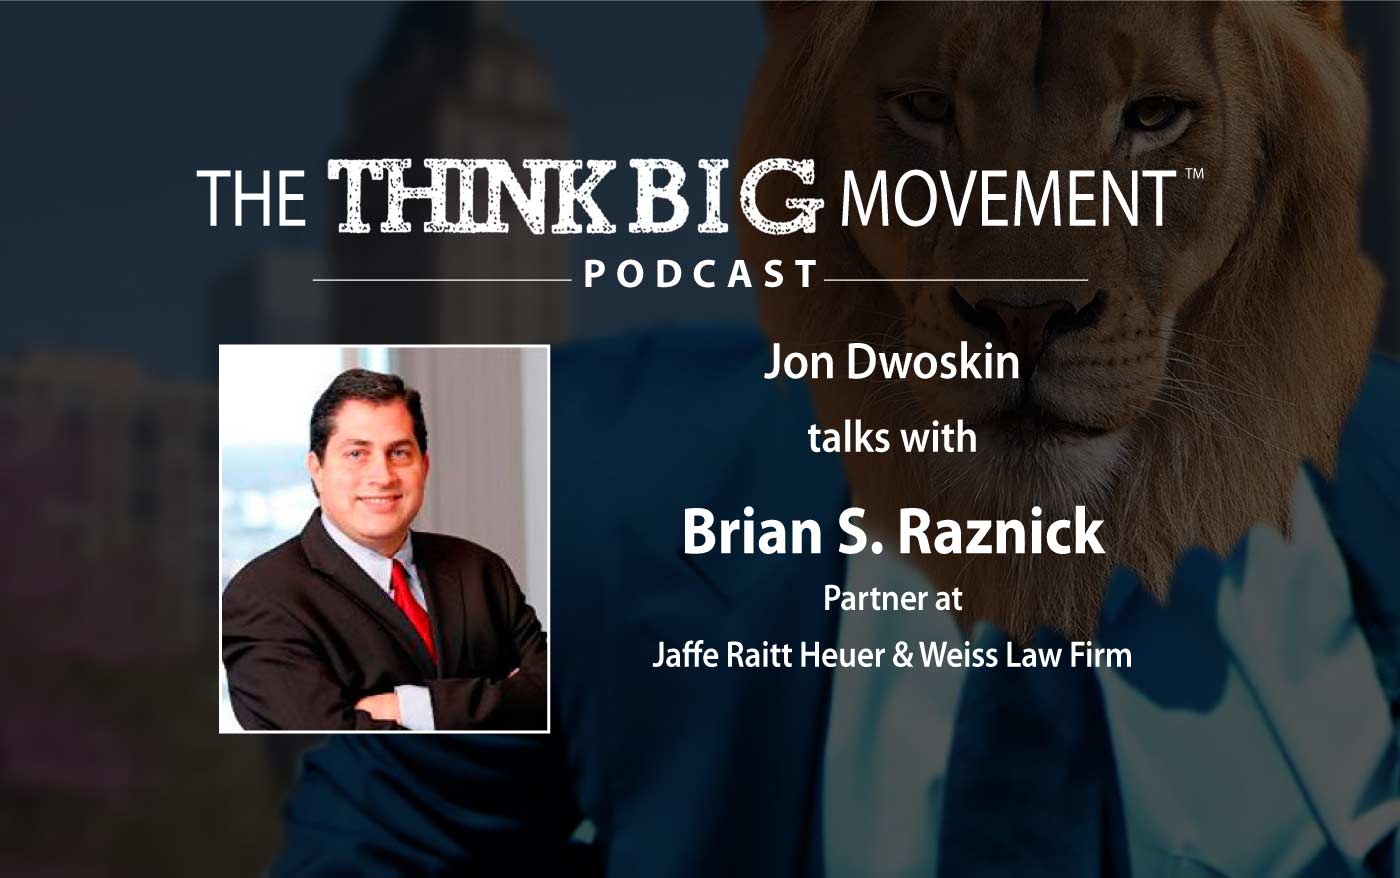 Jon Dwoskin Interviews Brian S. Raznick, Partner at Jaffe Raitt Heuer & Weiss